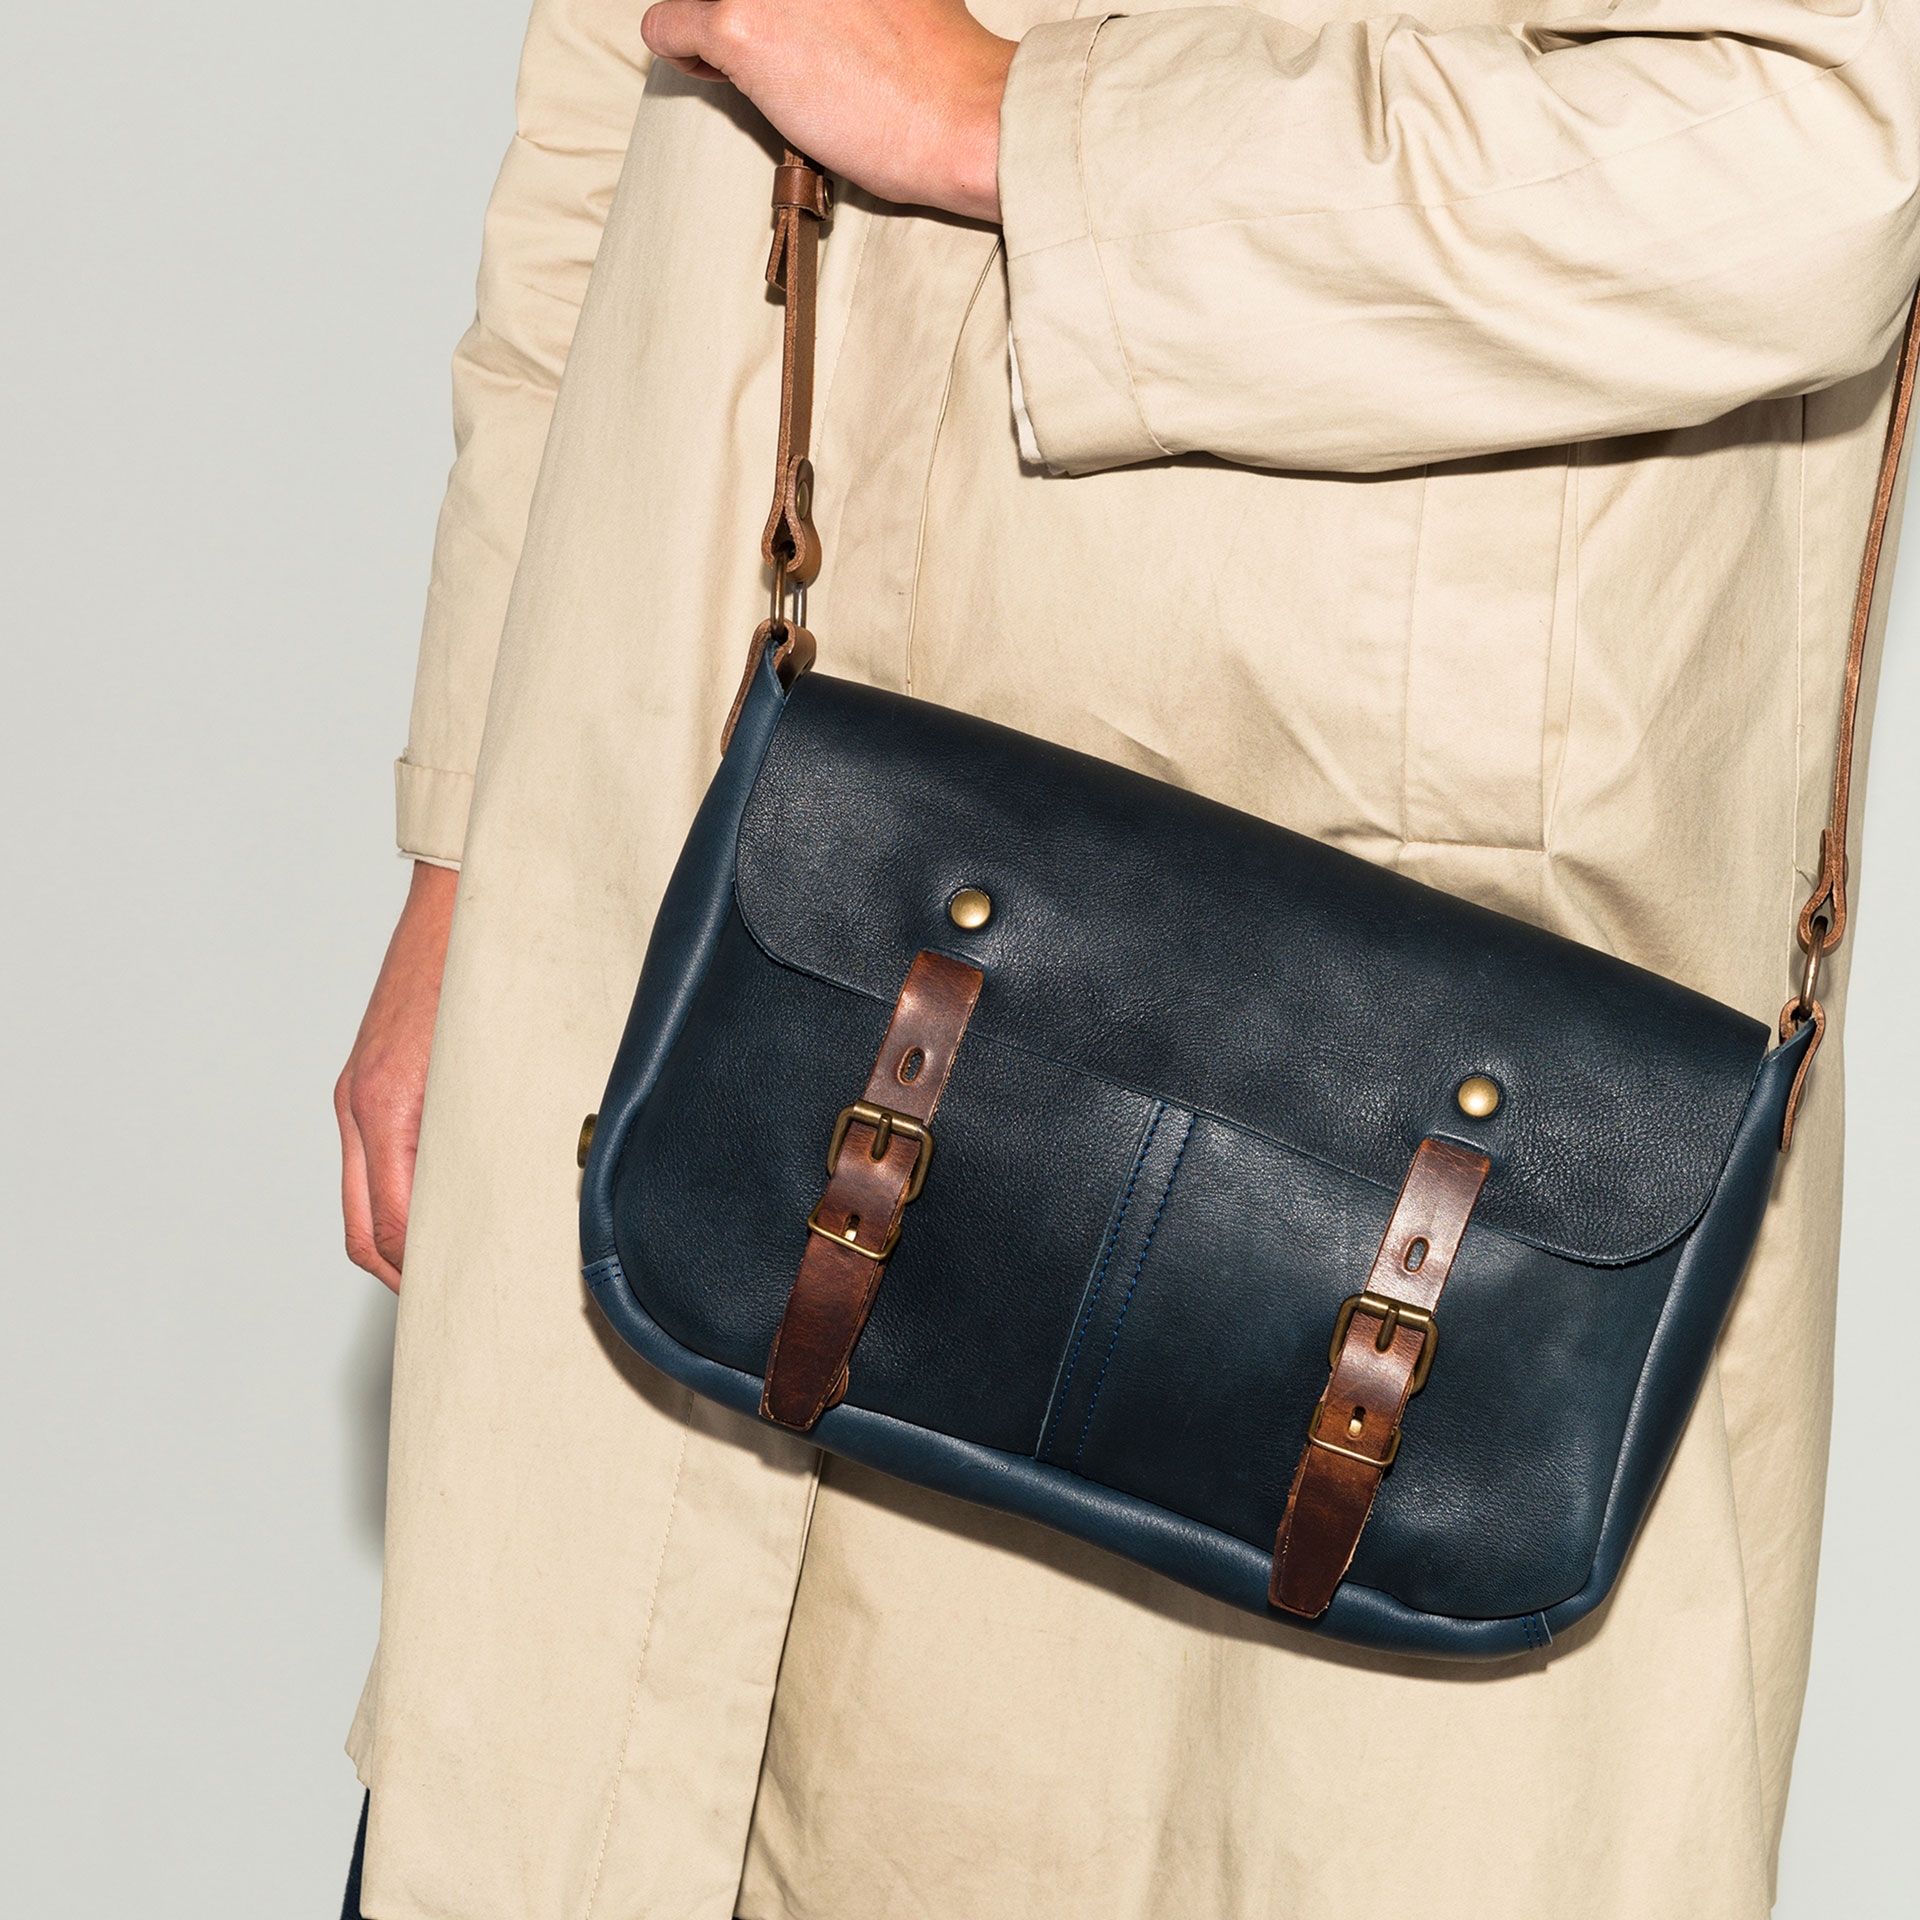 Léo Plumber bag I Leather Bags for Men & Women